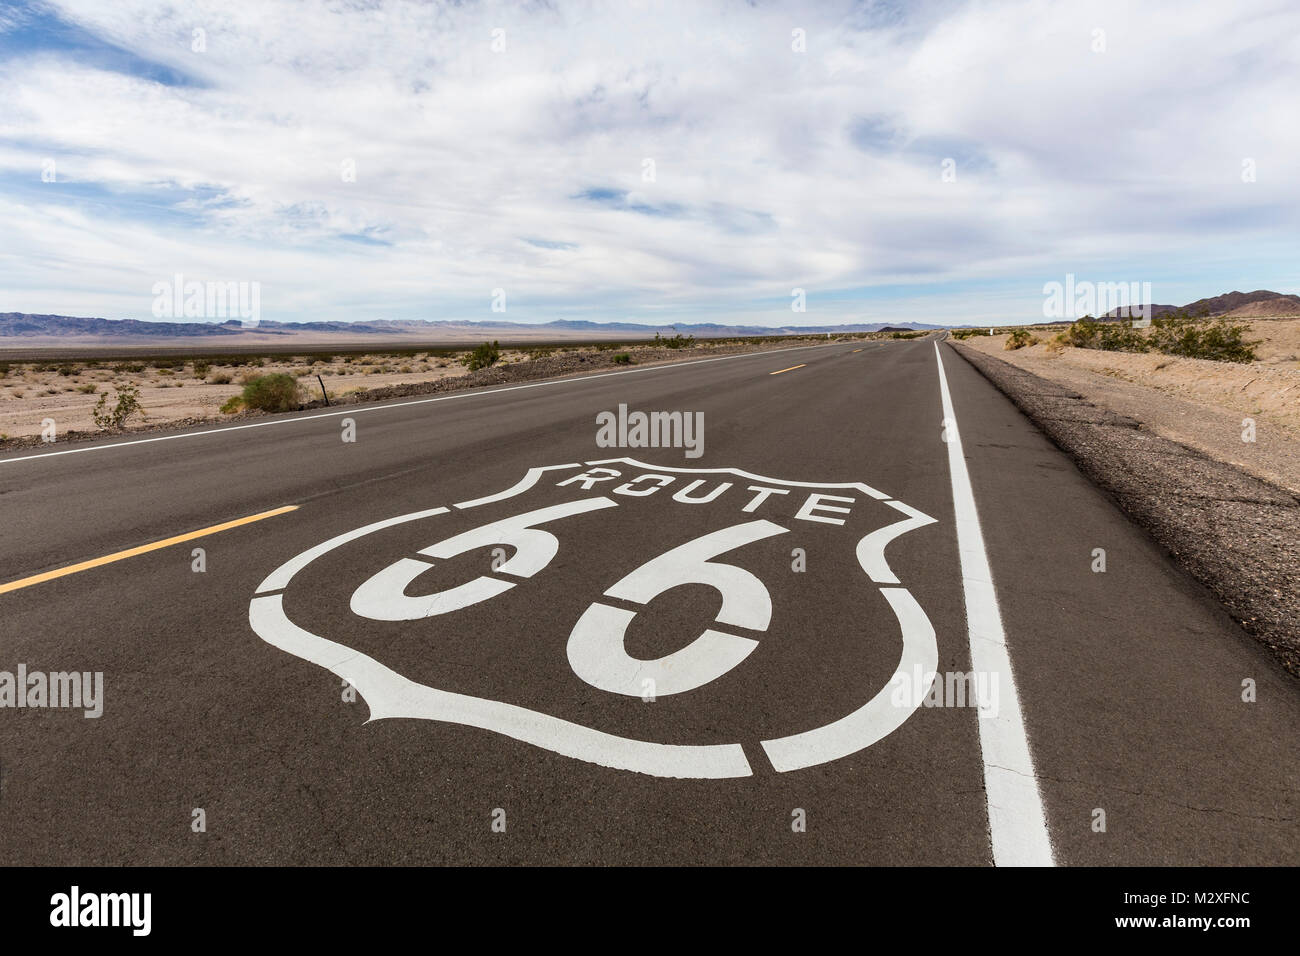 Panneau routier route 66 près de Amboy dans le désert de Mojave en Californie. Banque D'Images